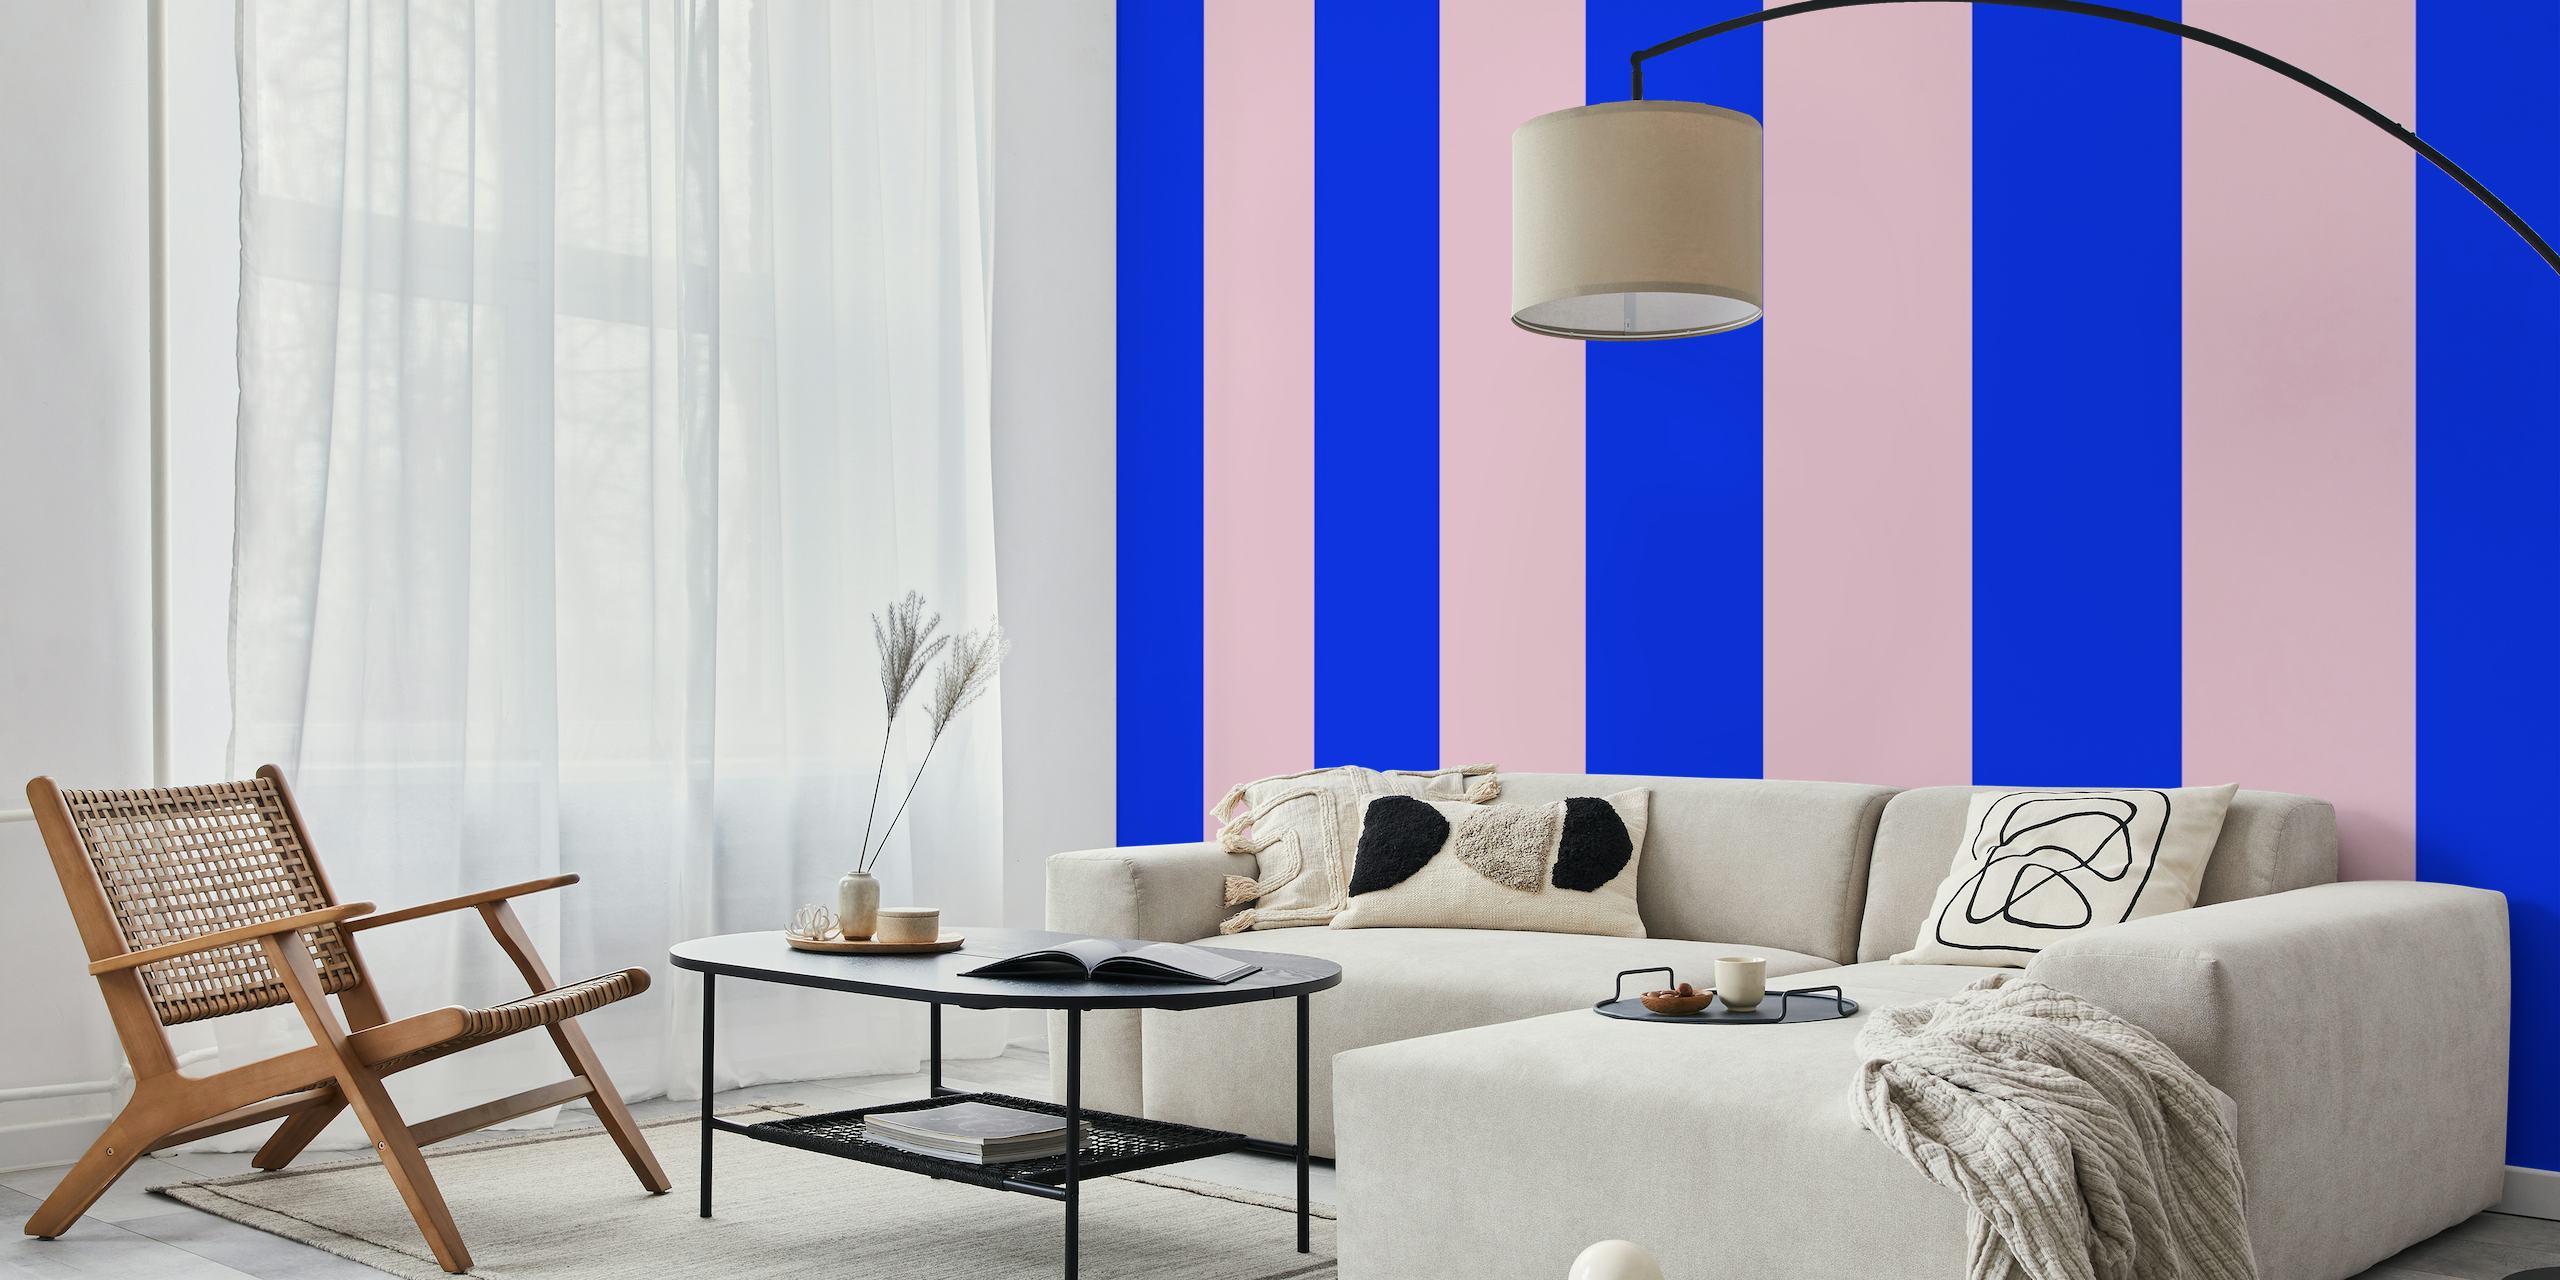 Blå og rosa stripete veggmaleri fra Happywall ved navn Blau Rosa Streifen